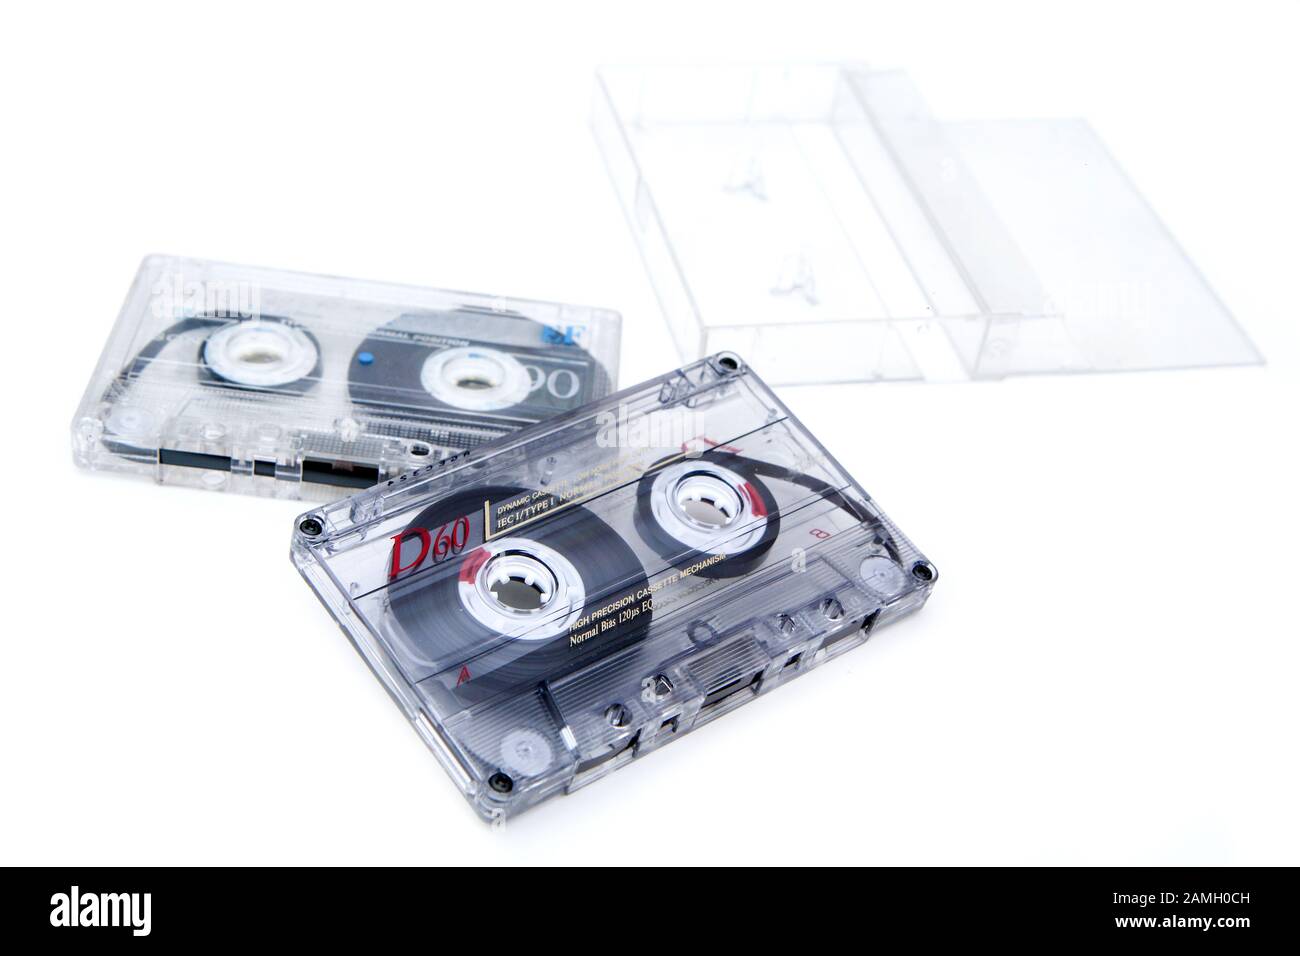 Las dos antiguas cassetes de audio magnético con una cubierta de plástico utilizada para grabar música. Aislado sobre fondo blanco. Foto de stock